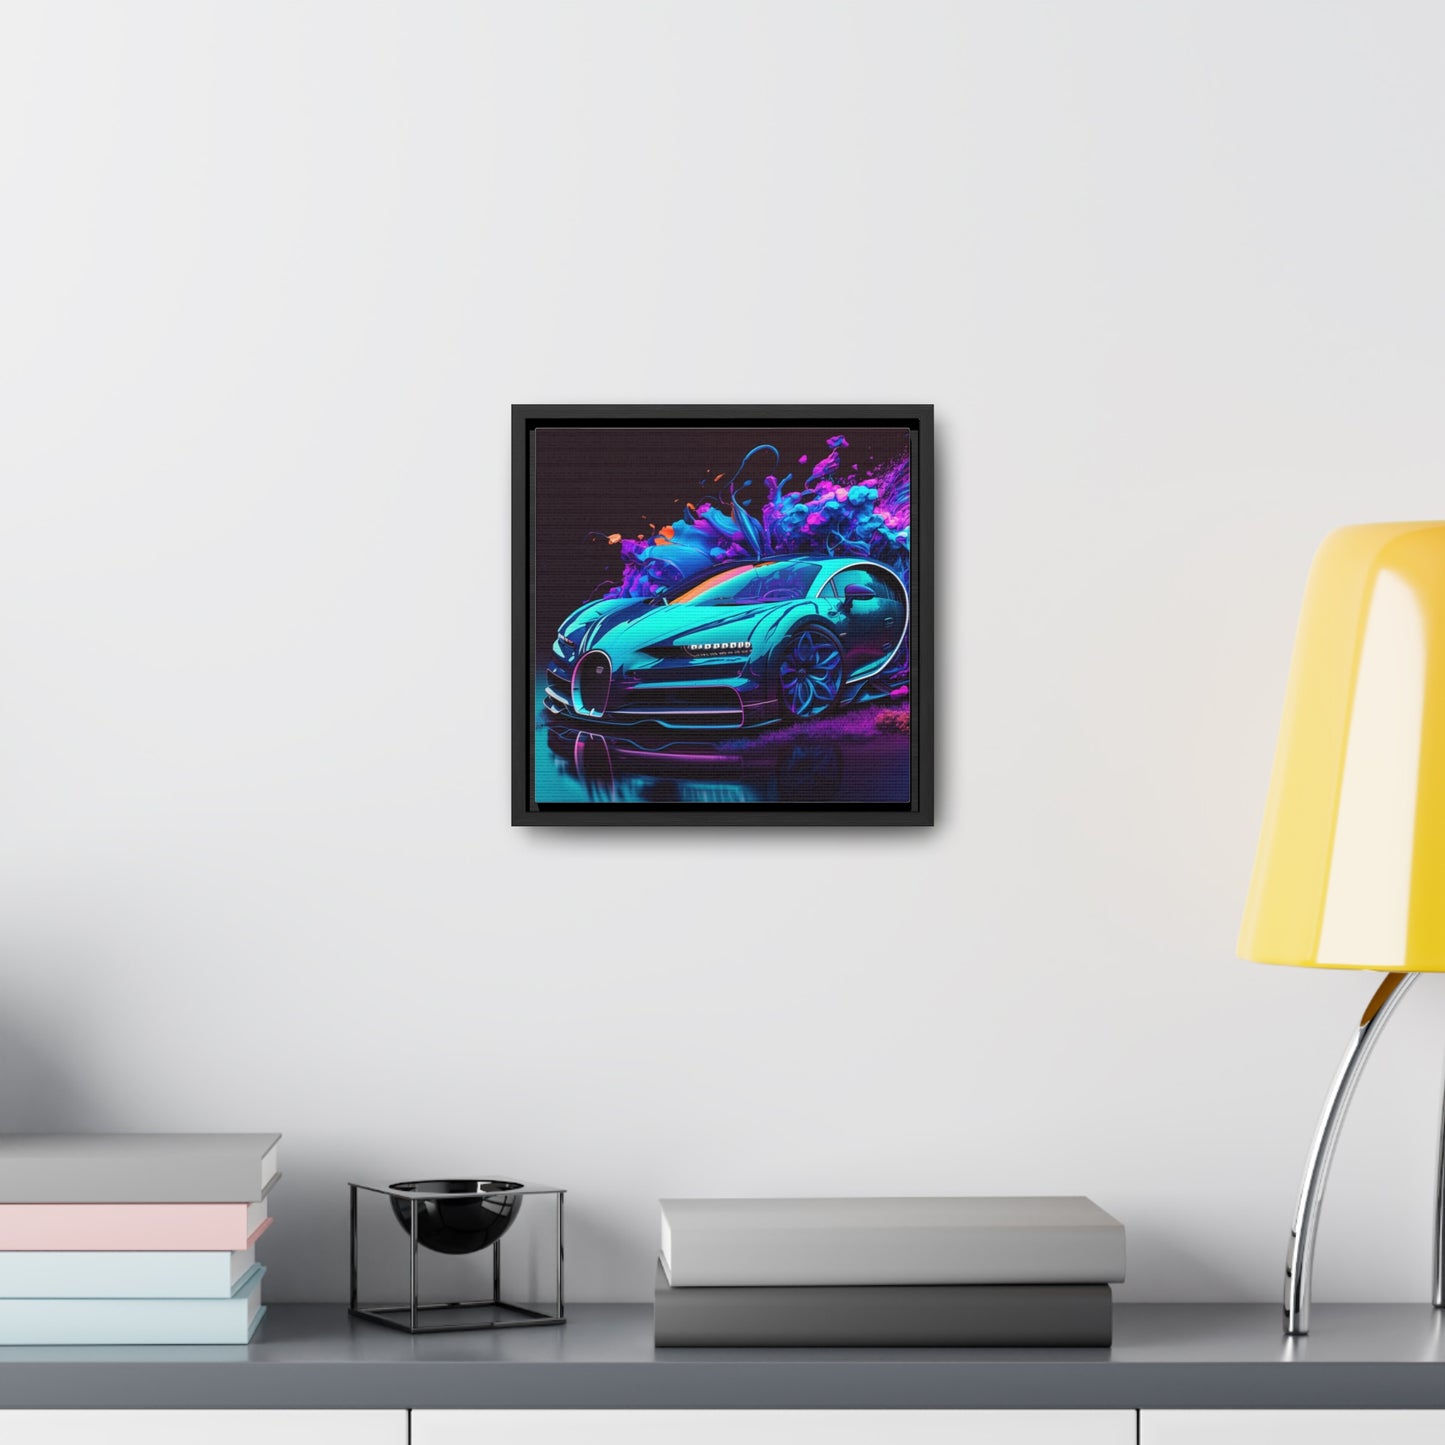 Gallery Canvas Wraps, Square Frame Bugatti Neon Chiron 3